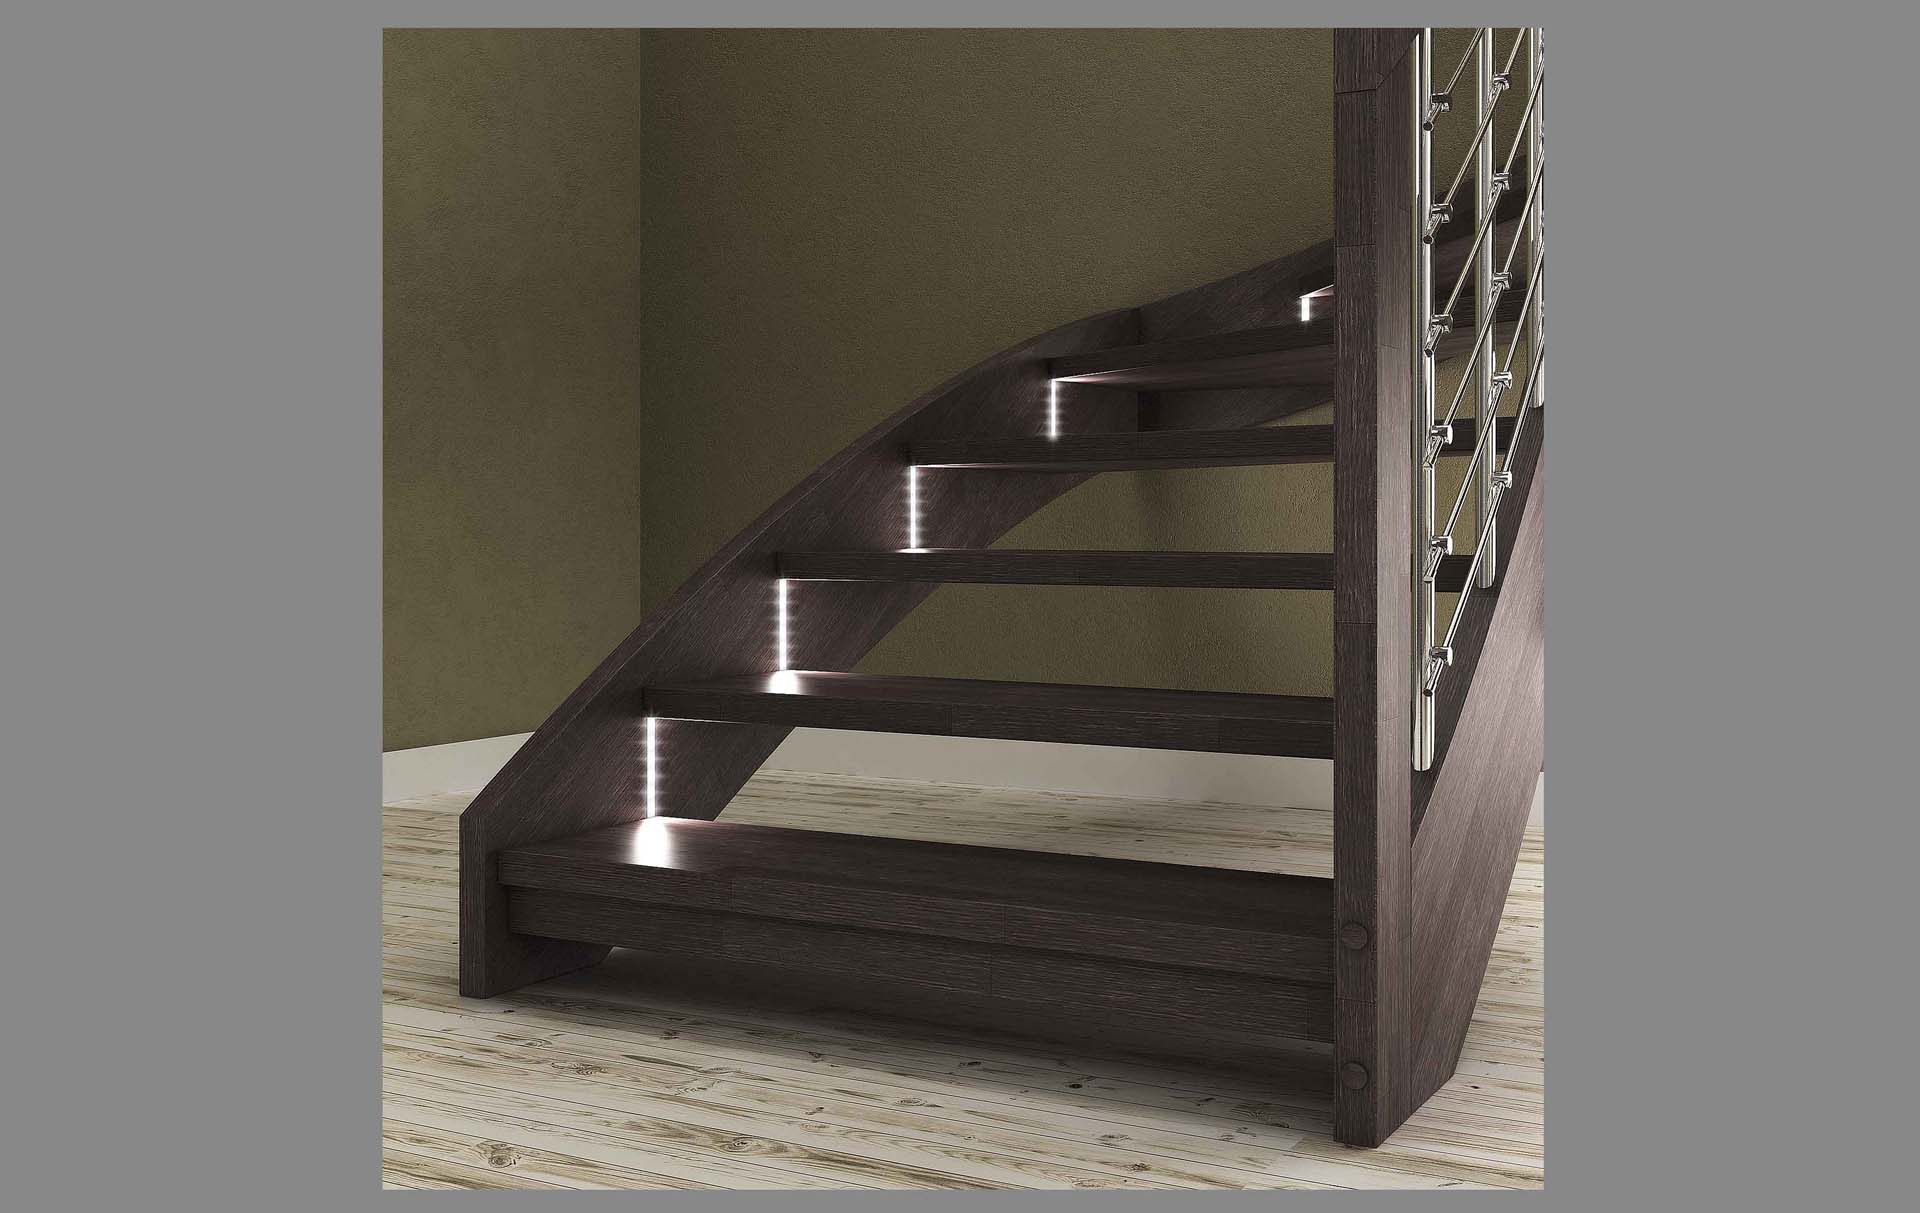 Esperia chrome LED, Escalier moderne avec led escalier design